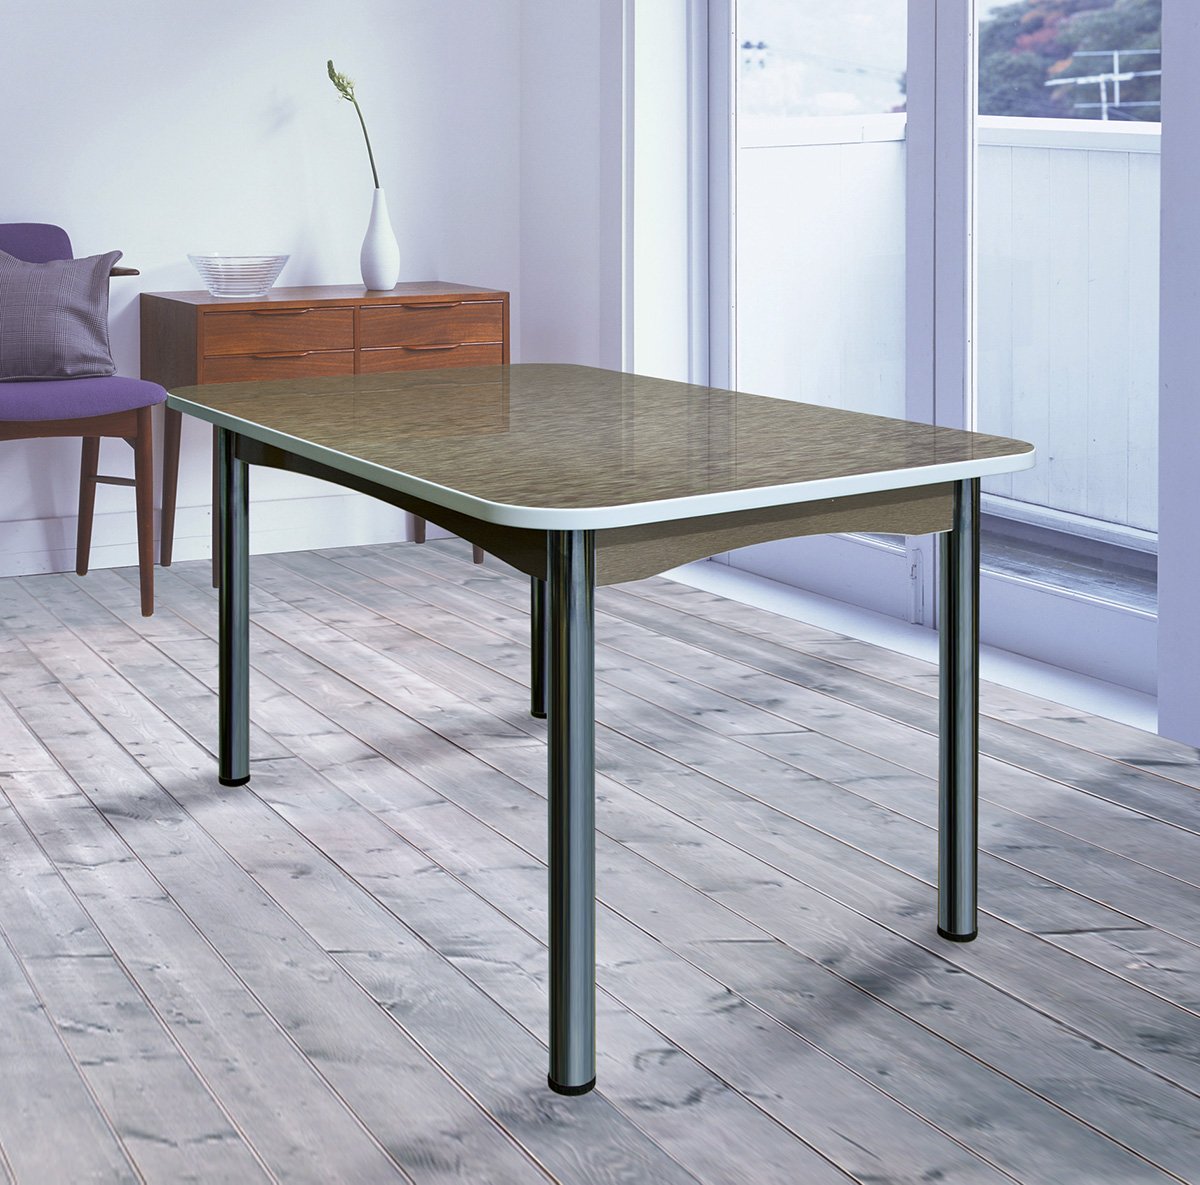 Железный кухонный стол. Стол обеденный Техно (КС-001/стекло) бело-черный/ноги хром. Стол обеденный Ланс DT-2852, белый мрамор. Обеденный стол Andorra GD-5901-2. Стол обеденный Ланс DT-2852l.